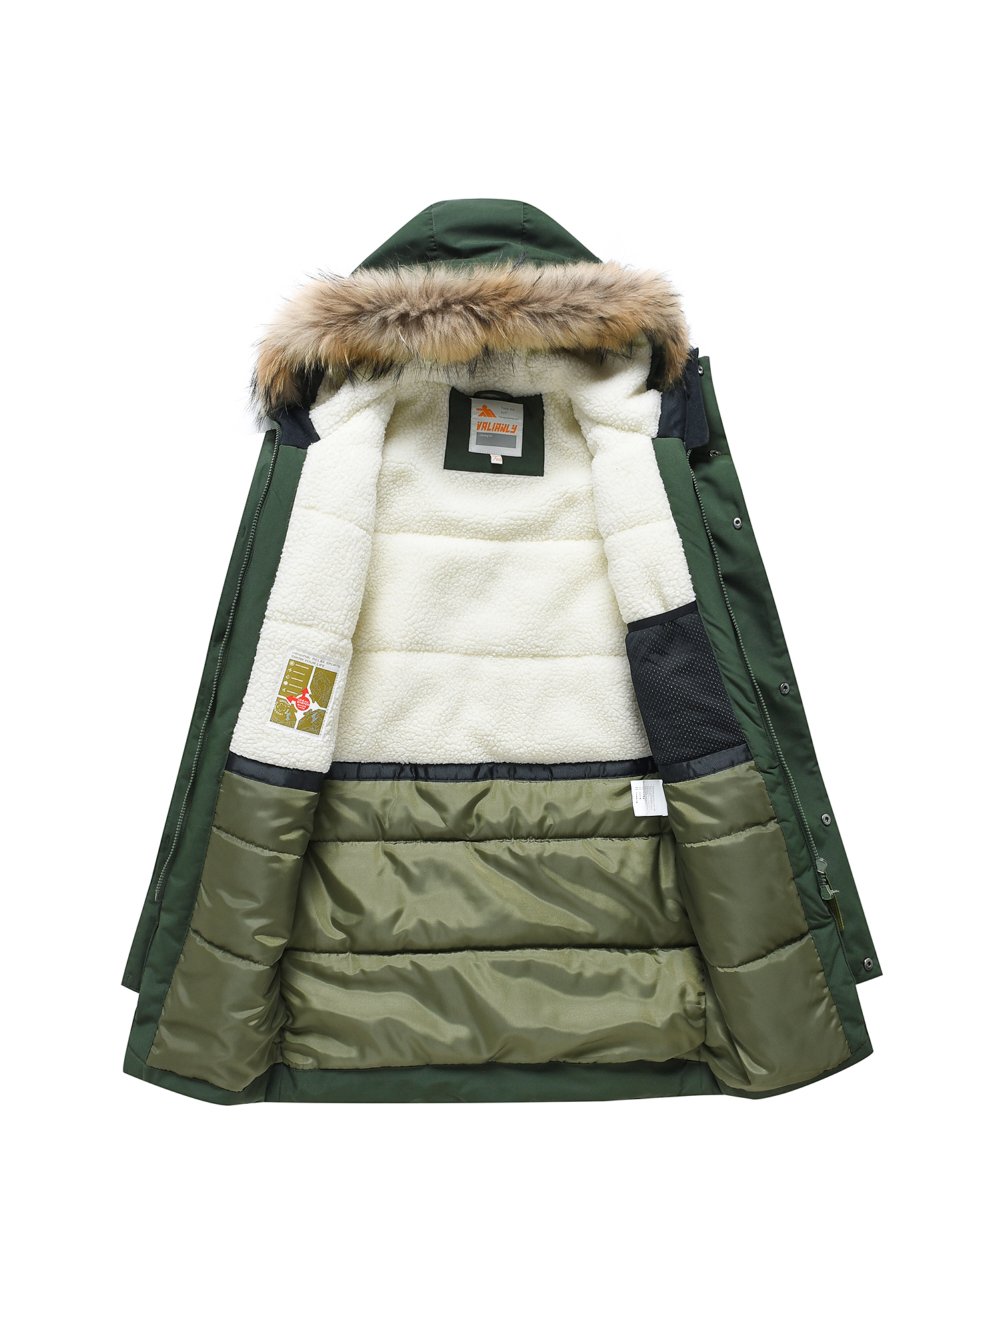 Купить куртку парку для мальчика оптом от производителя недорого в Москве 9343Kh 1